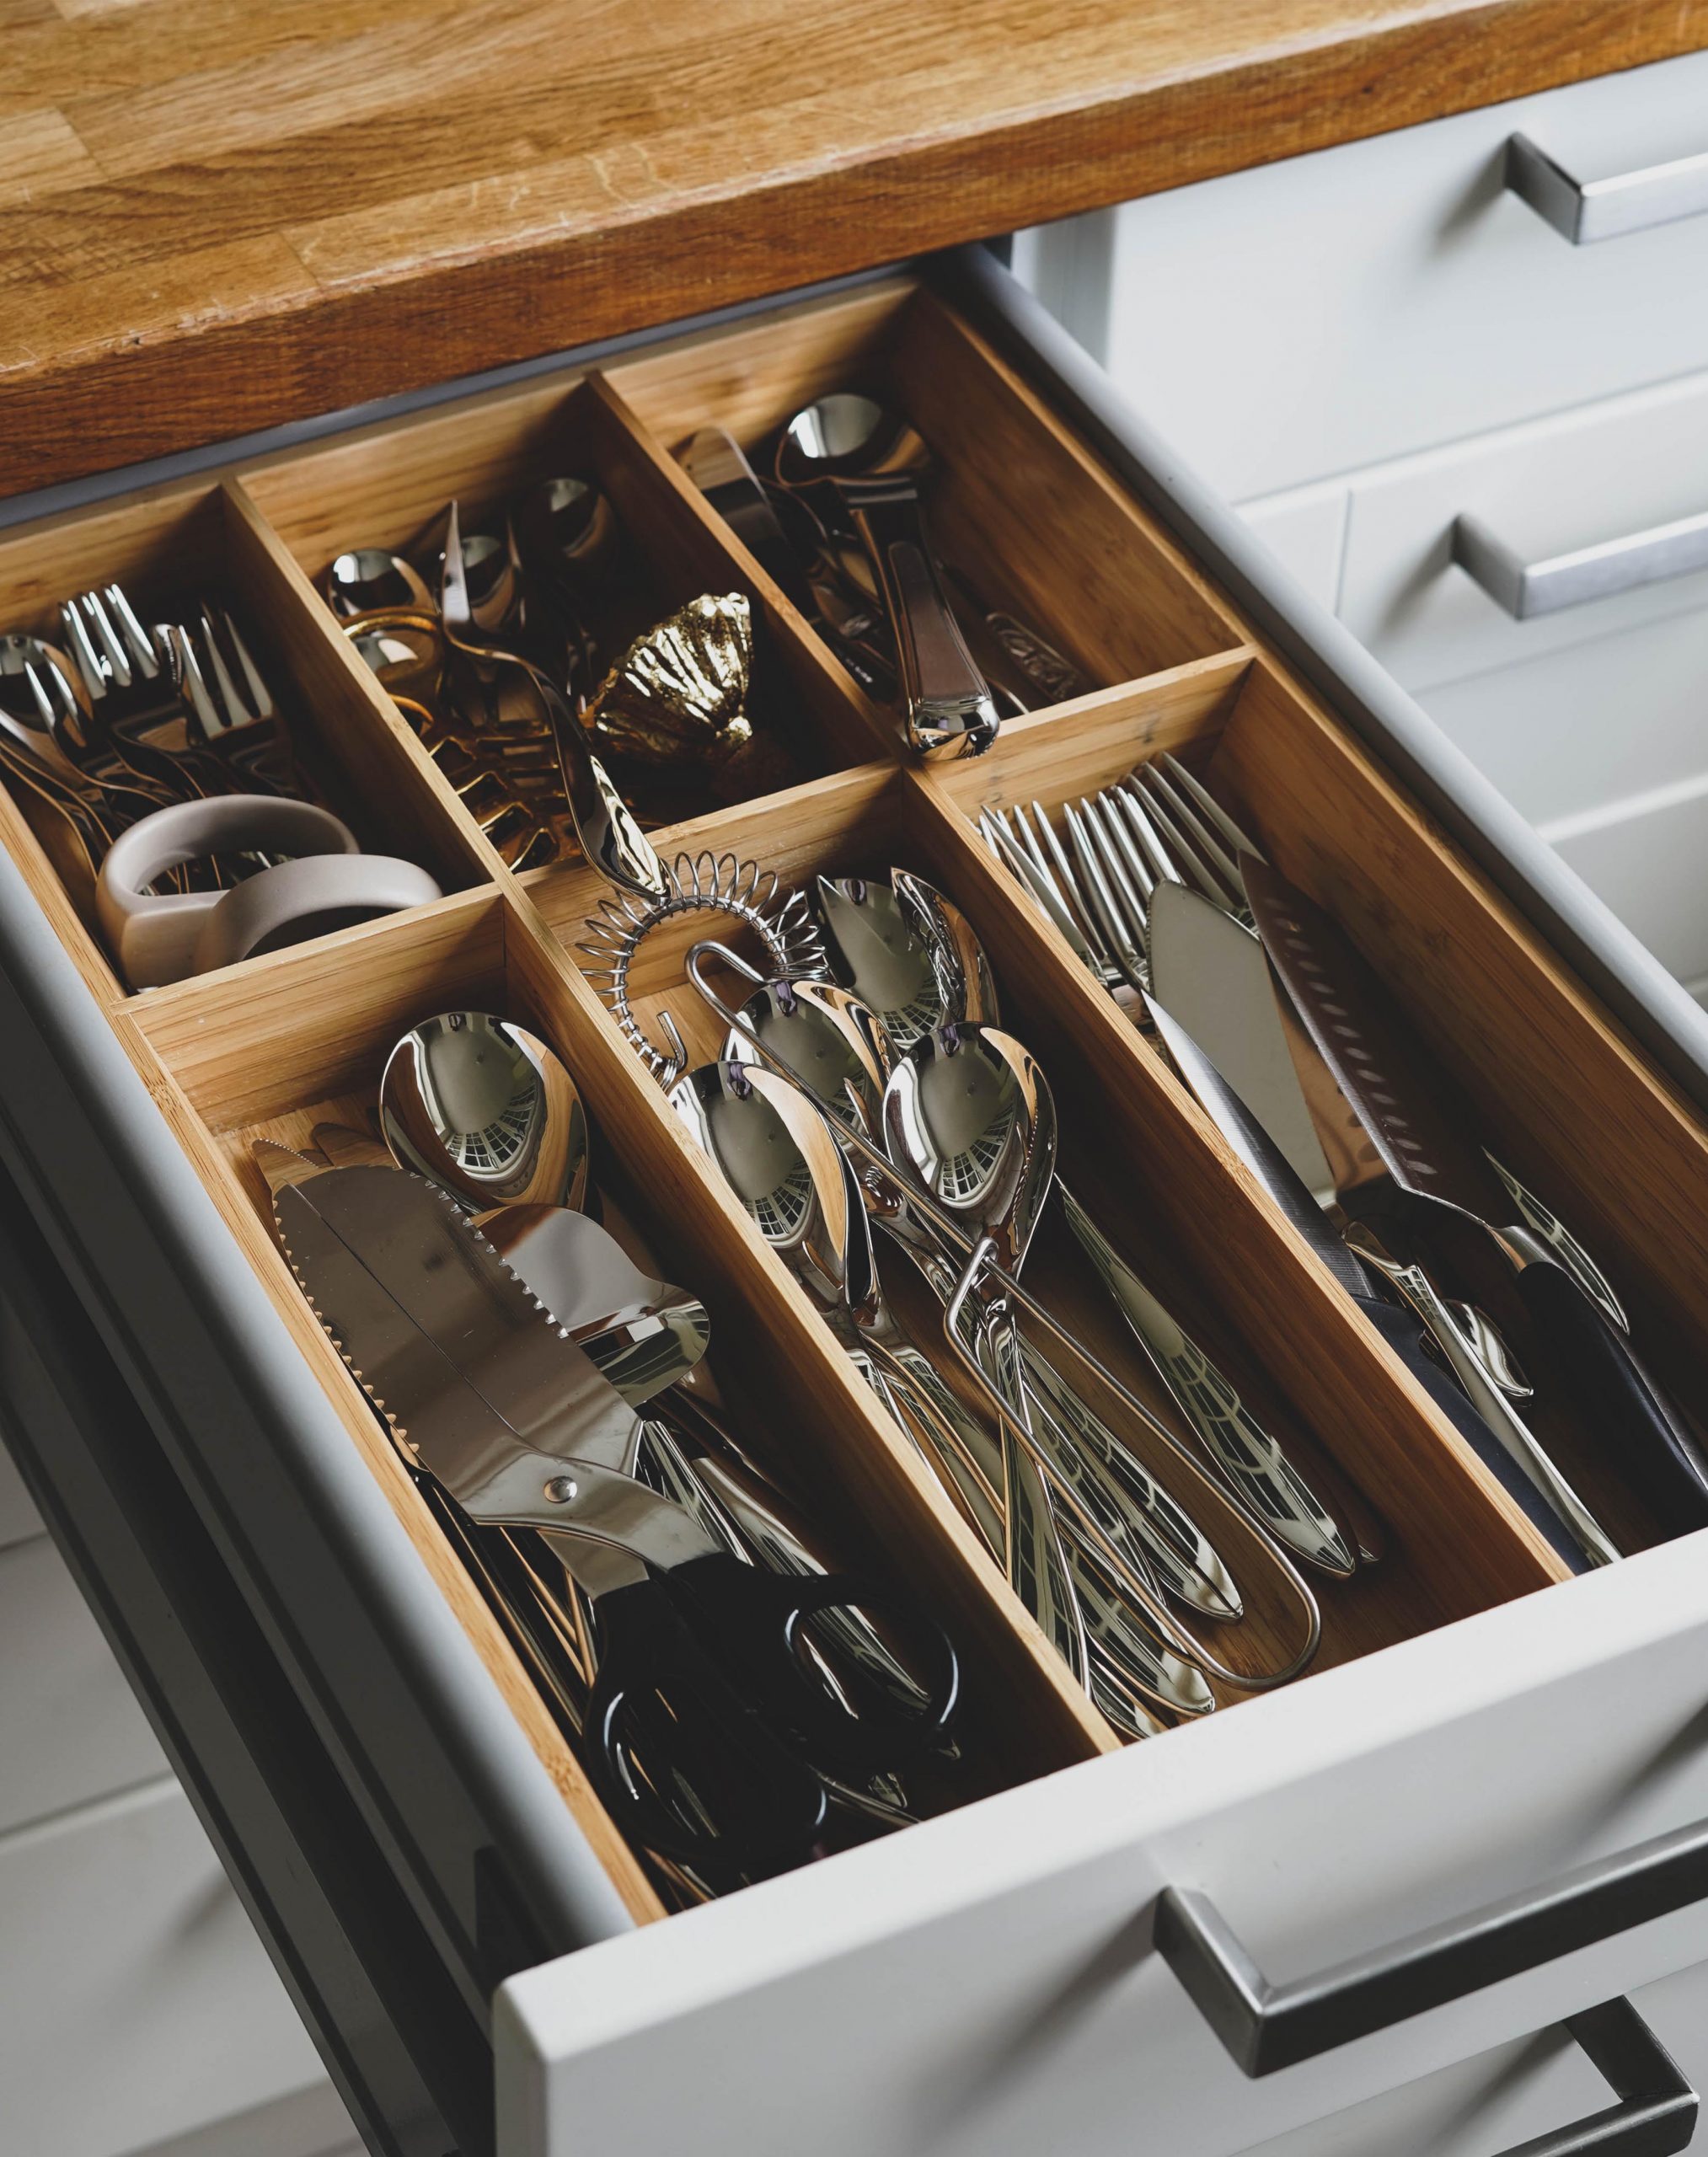 Organize cutlery drawer